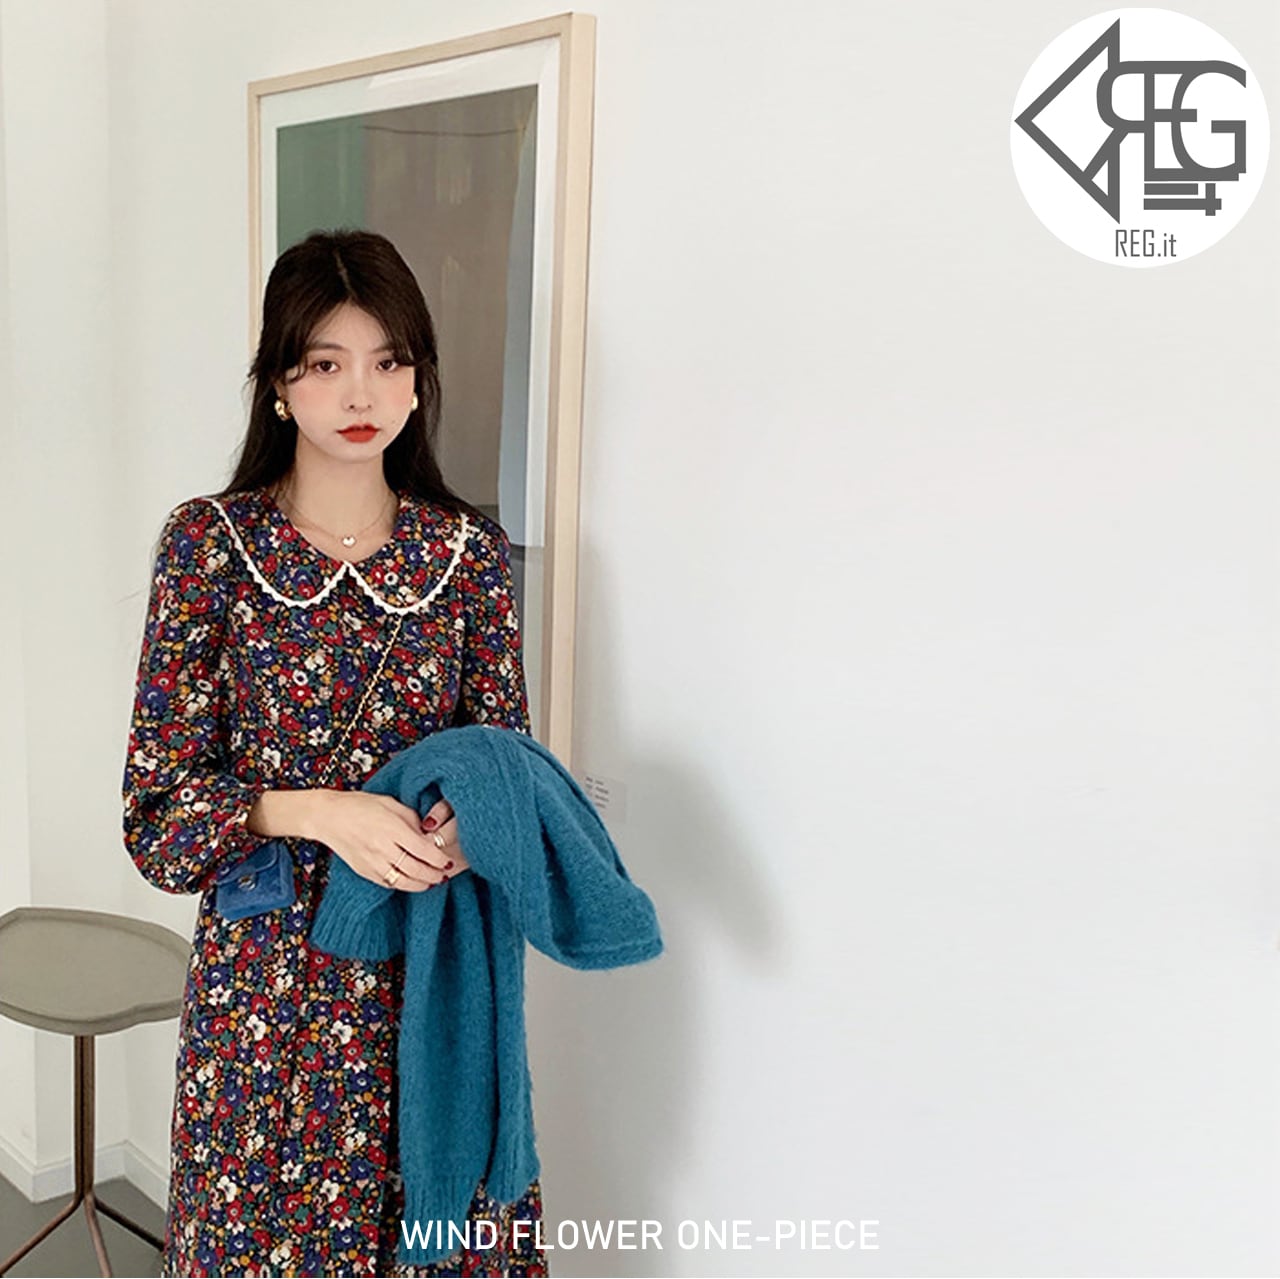 【REGIT】【即納】WIND FLOWER ONE-PIECE 韓国ファッション ...